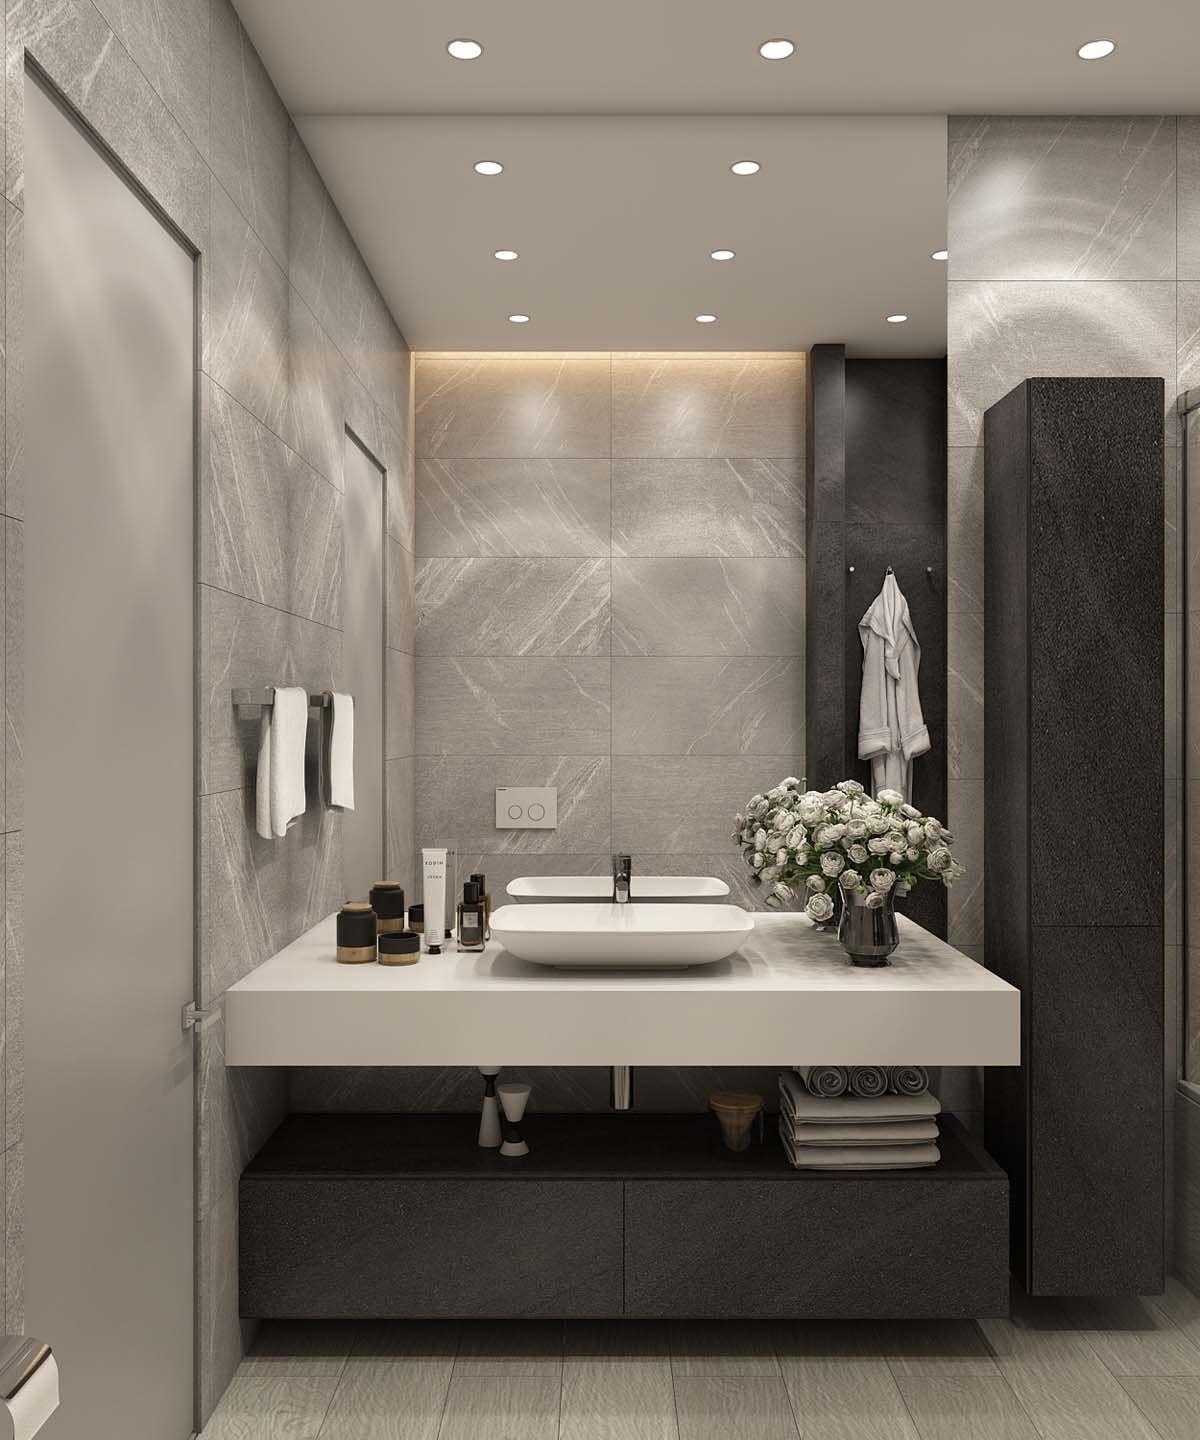 Хранение в ванной: советы по удобному использованию пространства. 12 хитростей для идеального порядка в ванной комнате